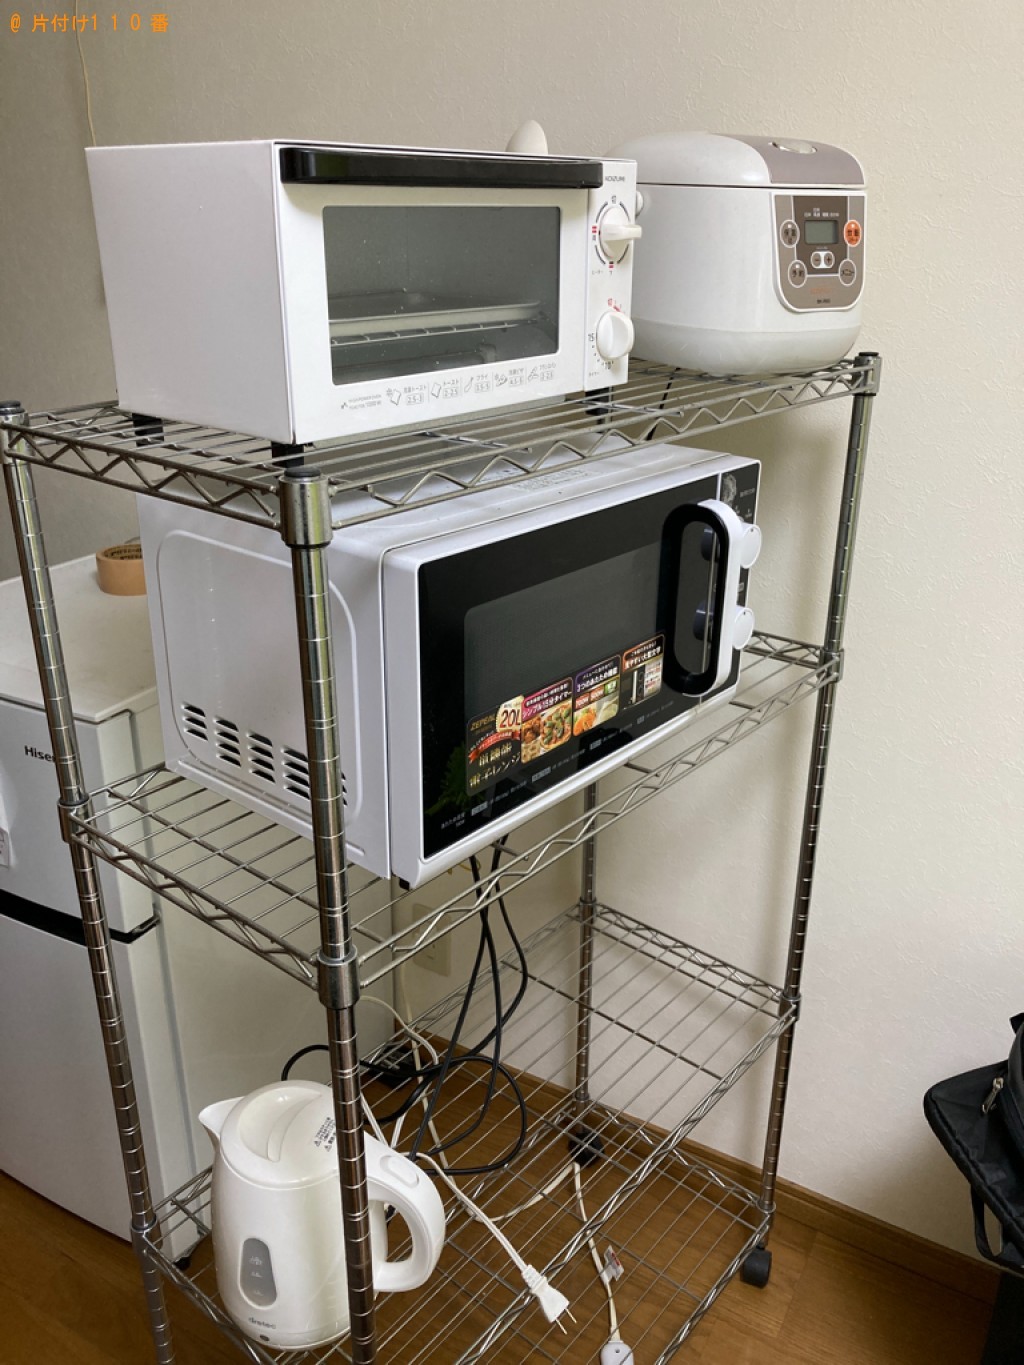 【名古屋市】冷蔵庫、洗濯機、二人掛けソファー、ラック等の回収